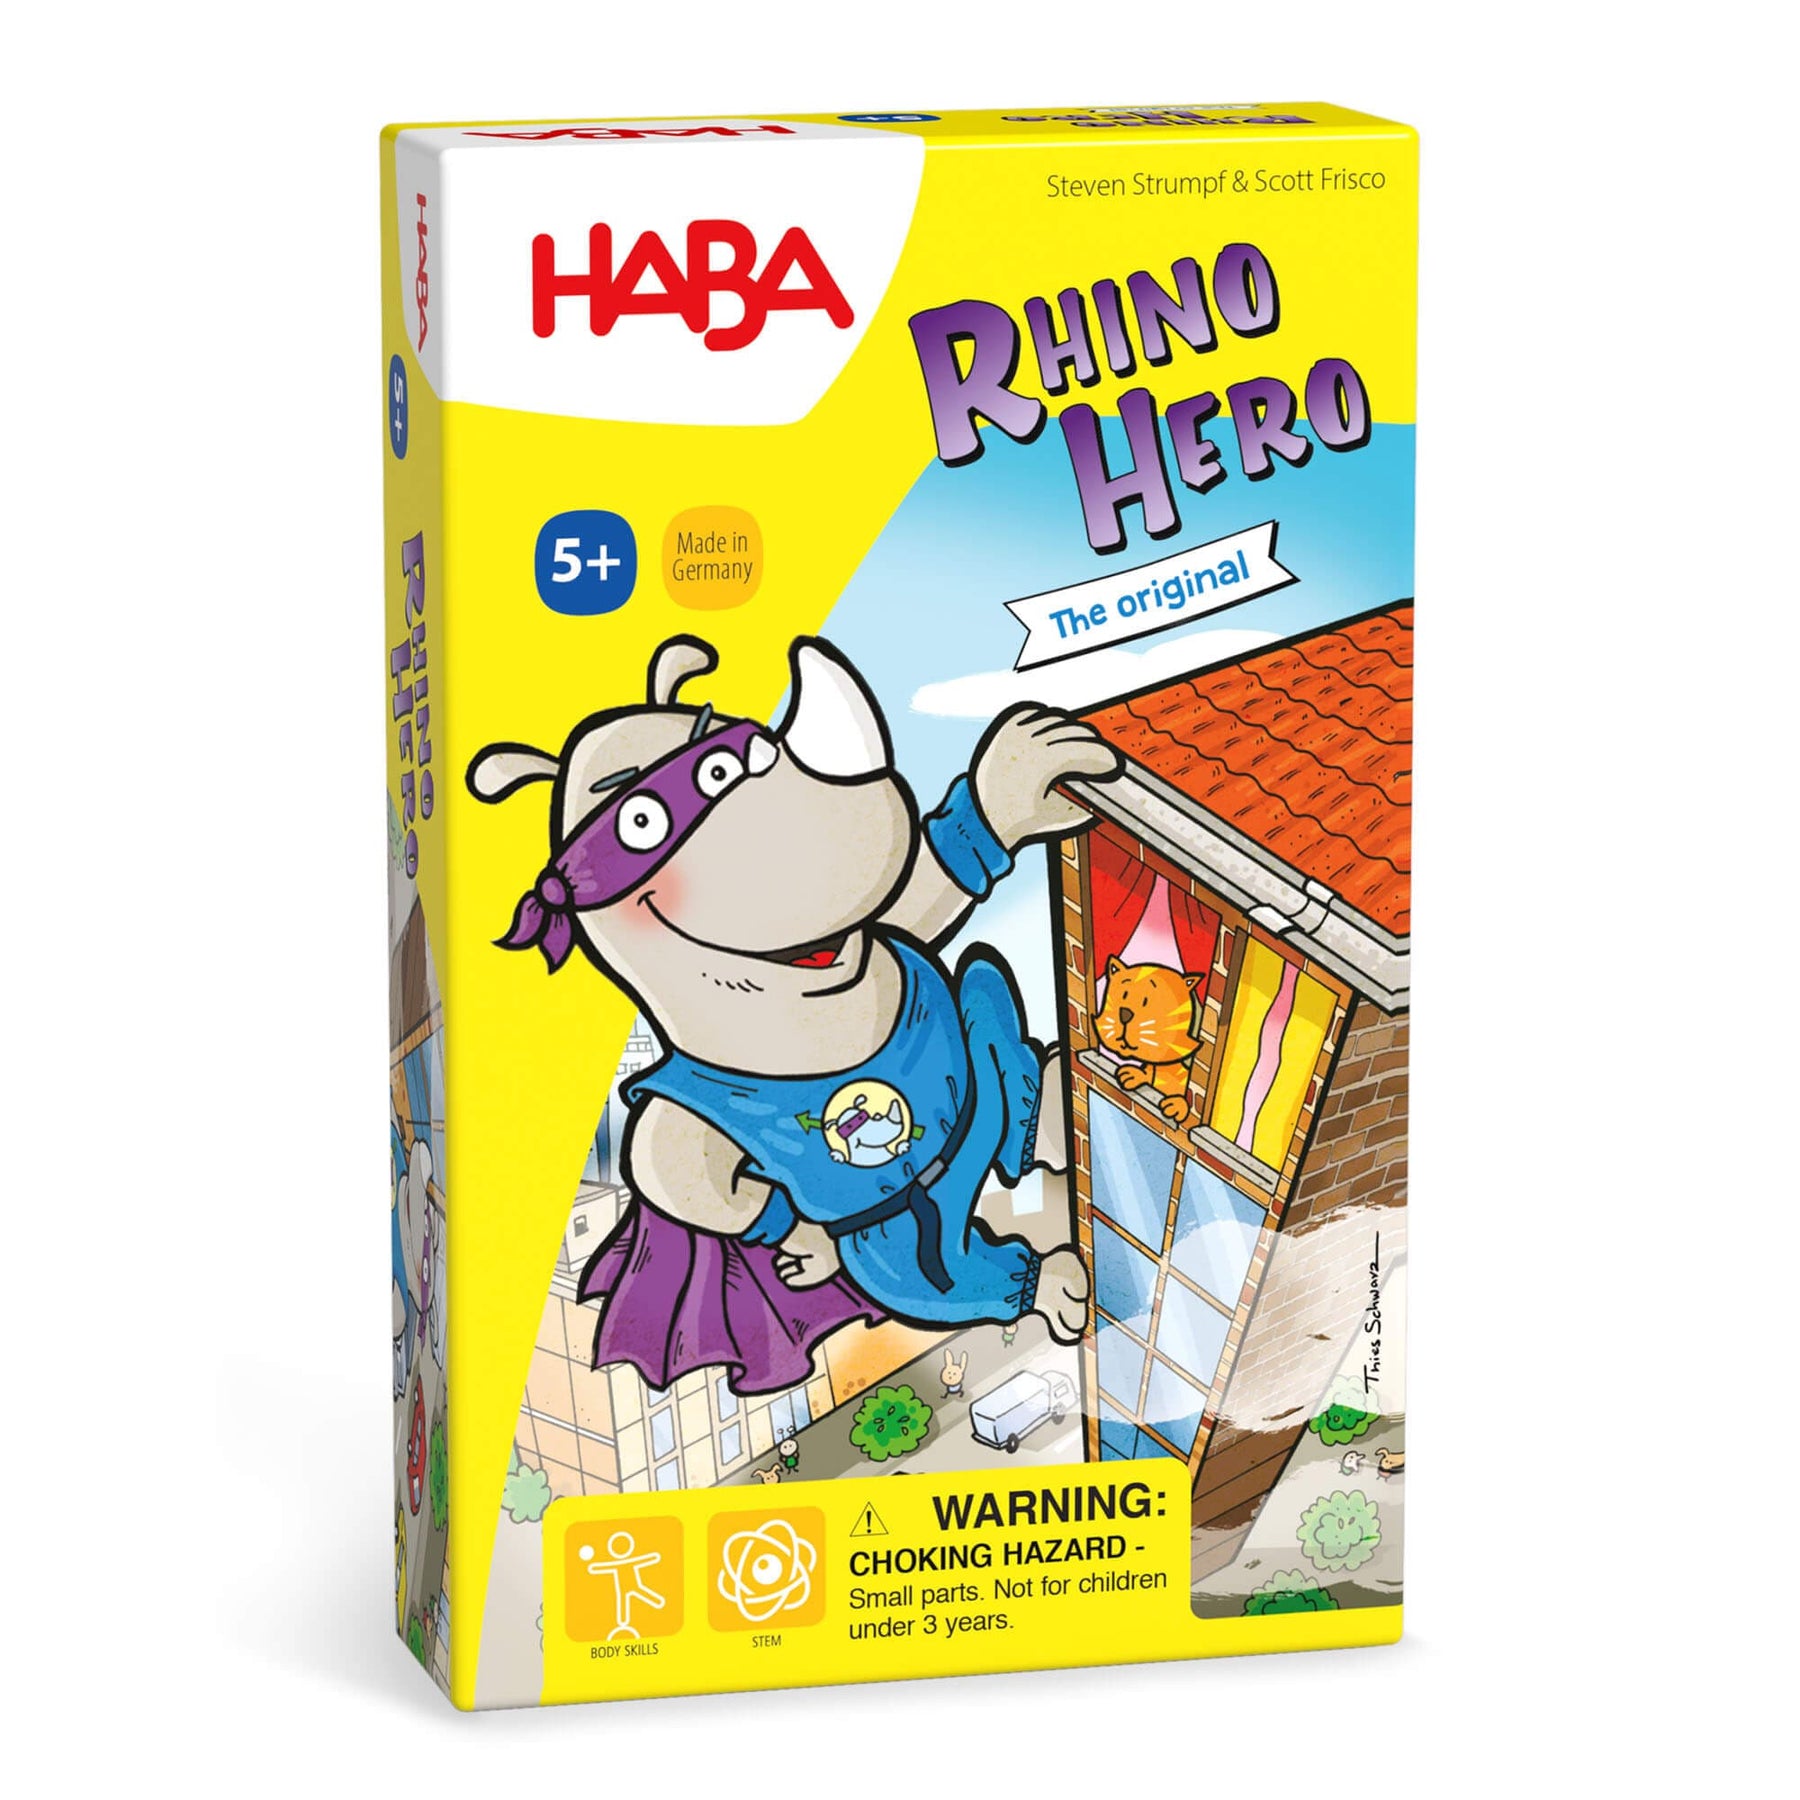 SUPERDivertilandia - Nuevo juego de mesa: Rhino Hero!:   RHINO HERO en :   #habagames #rhinohero #superdivertilandia #haba